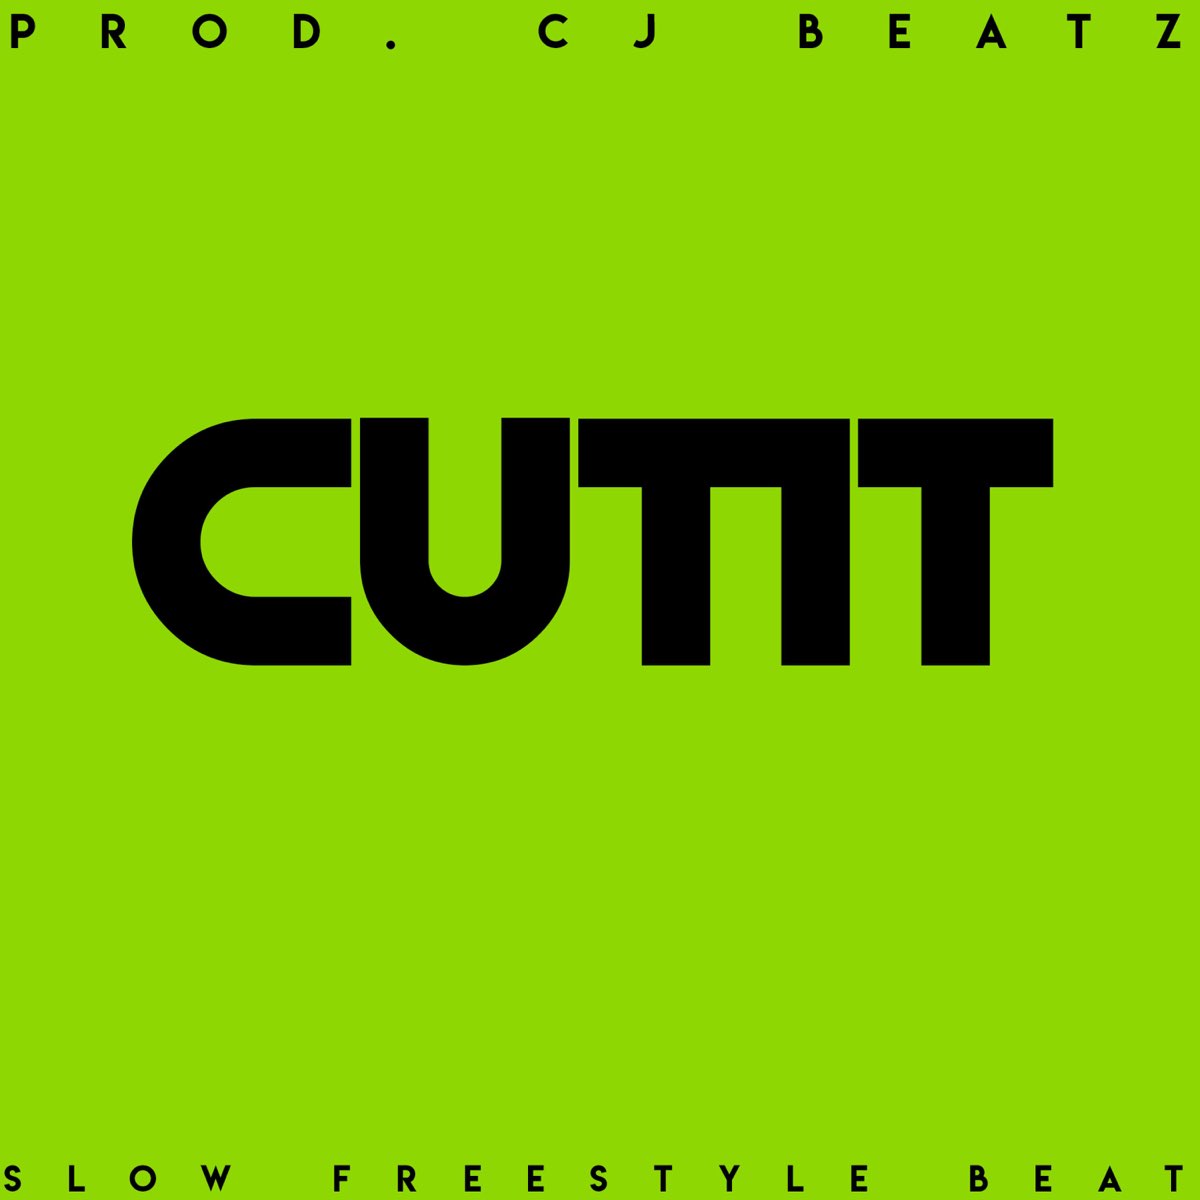 Cut It (Slow Freestyle Beat) [Instrumental] - Single by CJ Beatz on Apple  Music